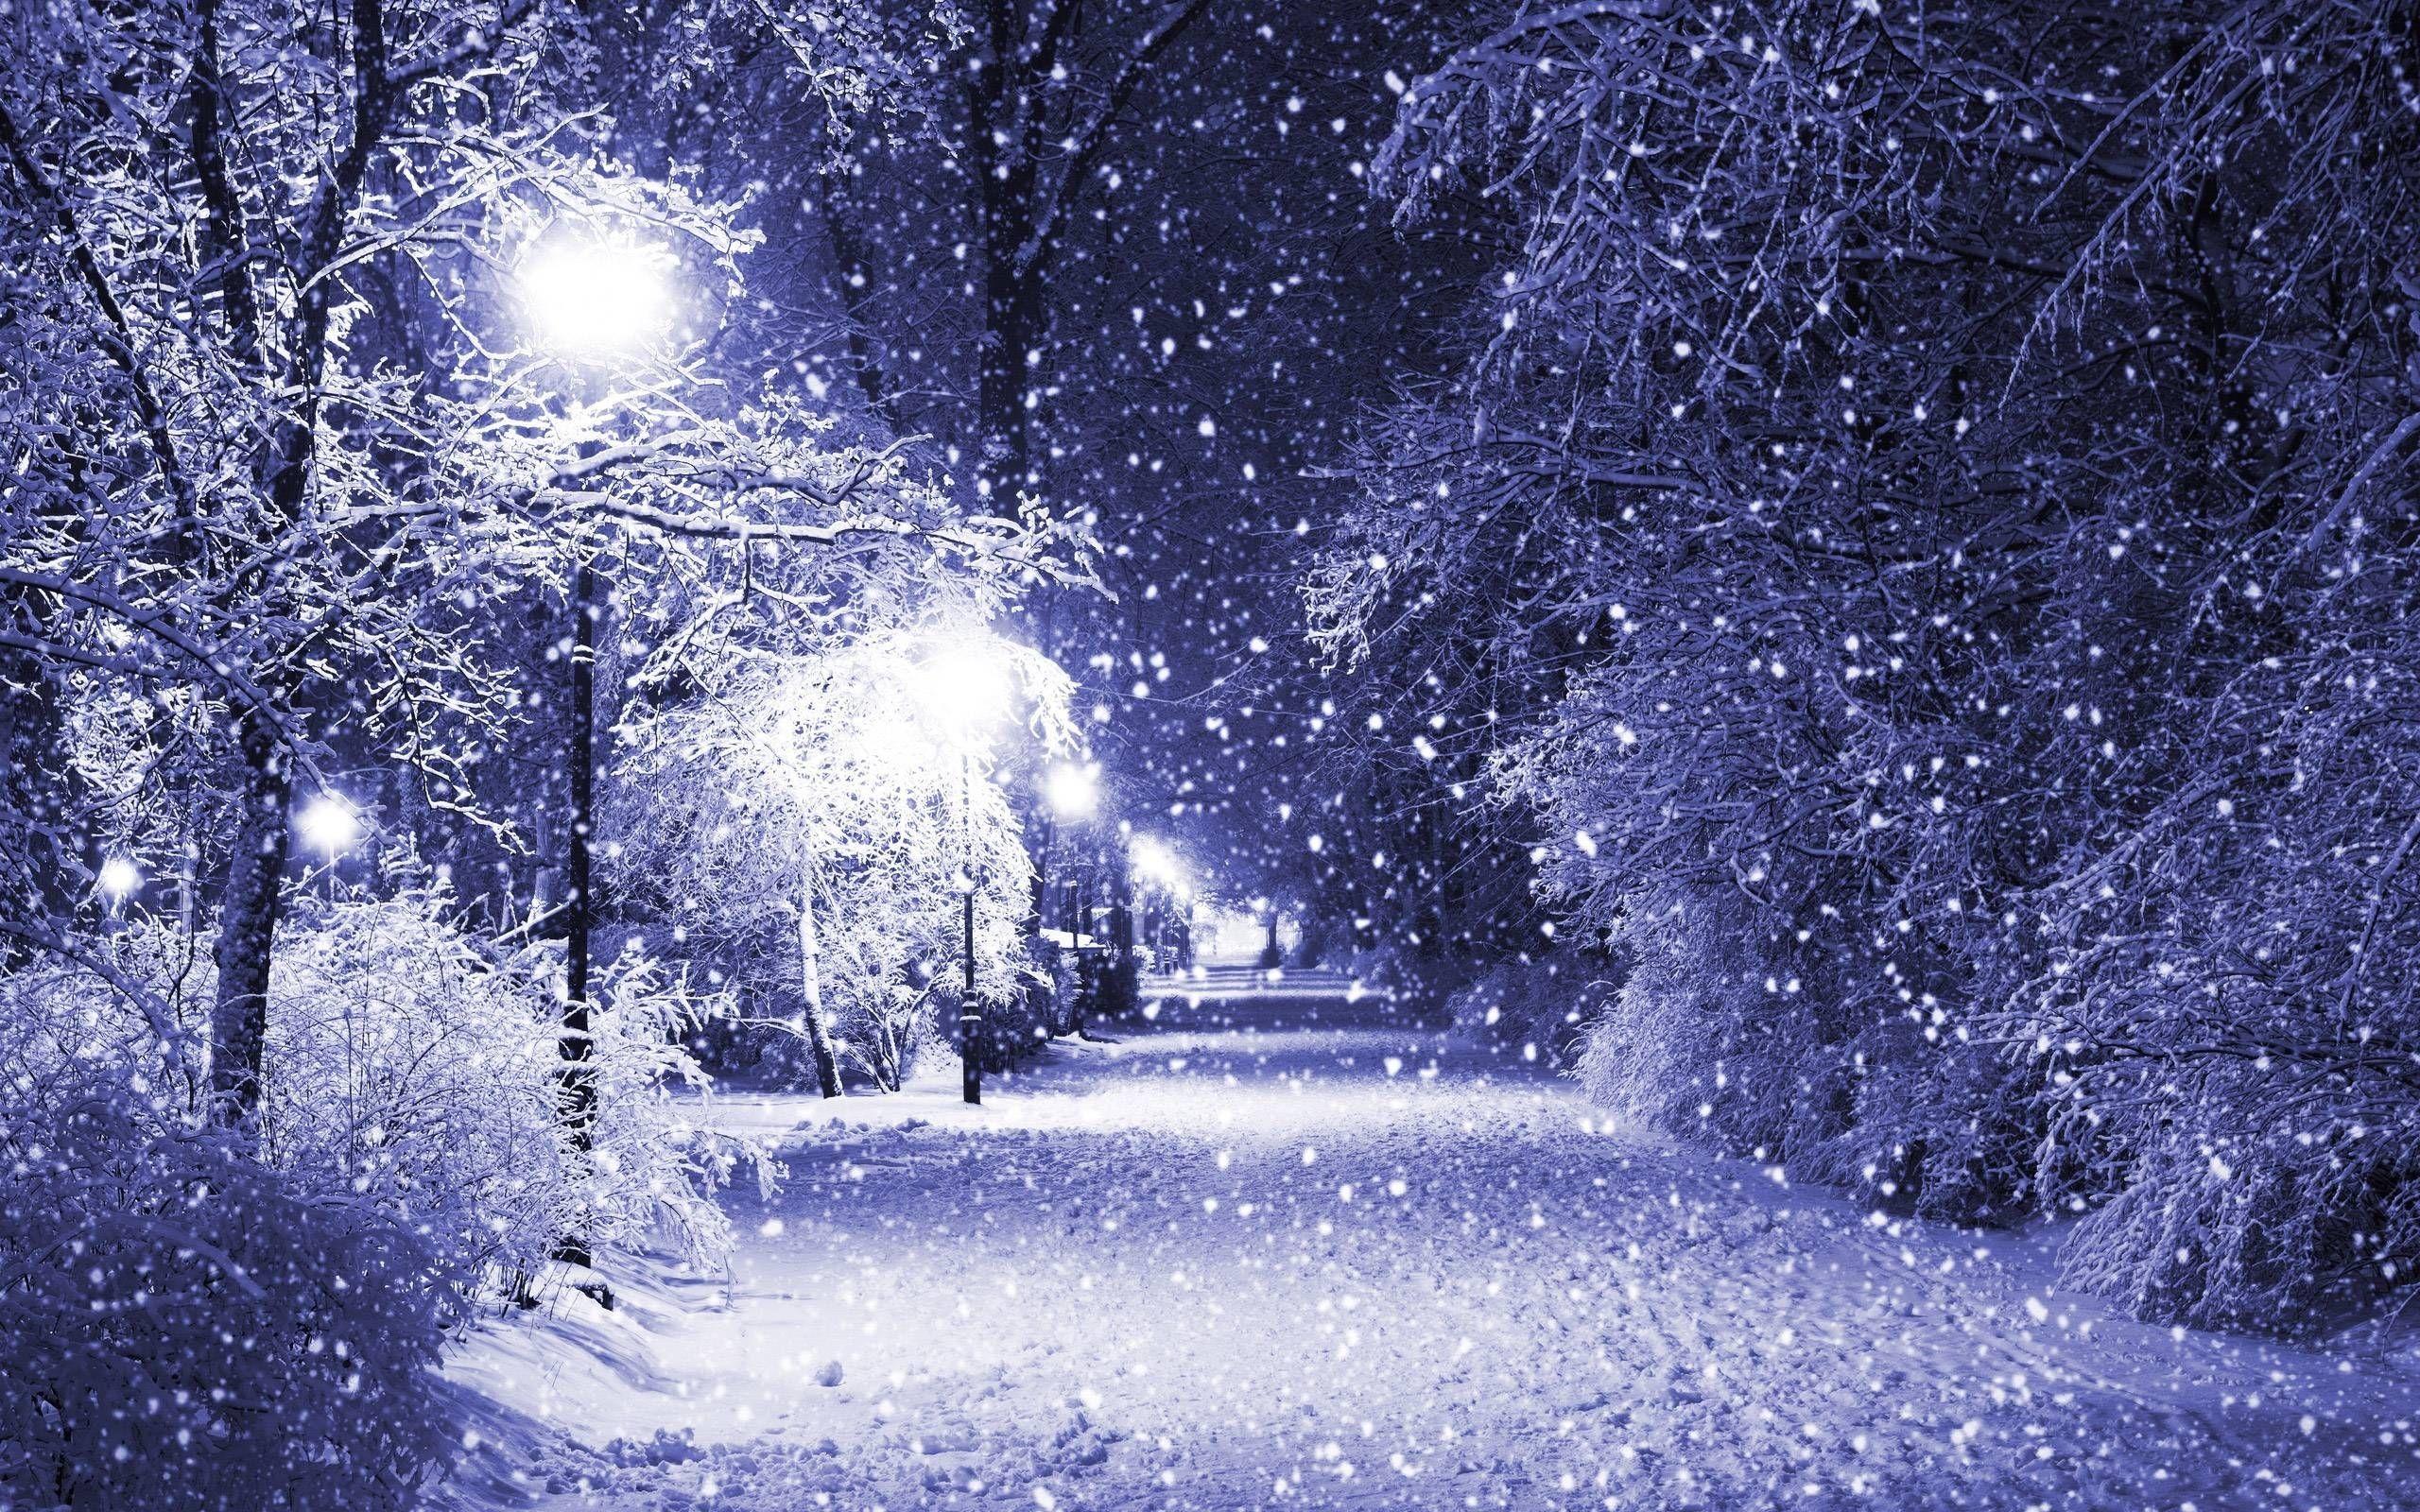 Hình nền đêm Giáng sinh đầy tuyết sẽ khiến bạn cảm thấy như đang đứng giữa những ngôi làng trên bãi tuyết trắng xóa, cảm giác thanh bình và thư thái chắc chắn sẽ không thể bỏ qua.